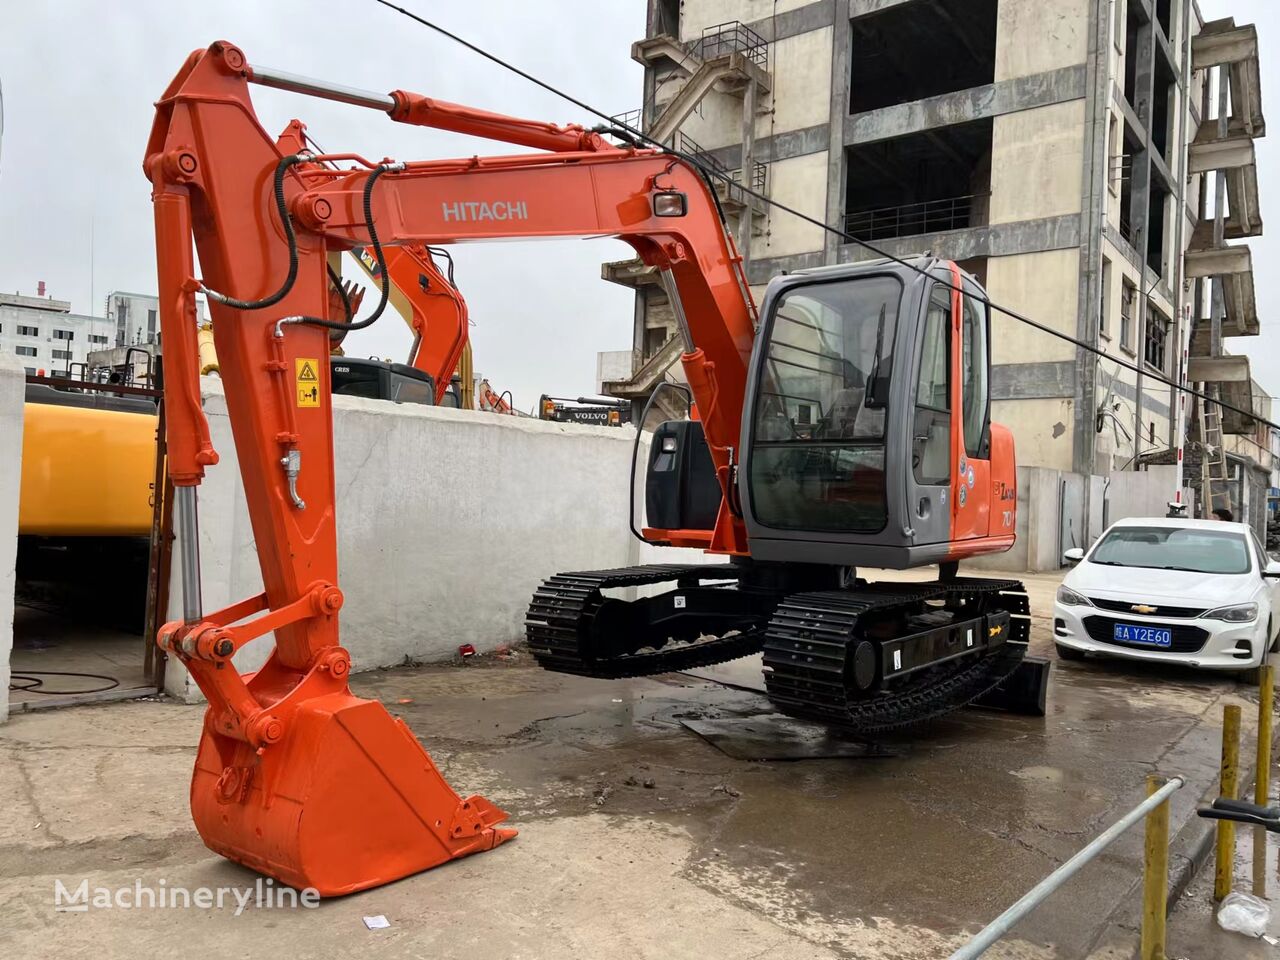 Hitachi ZX70 tracked excavator